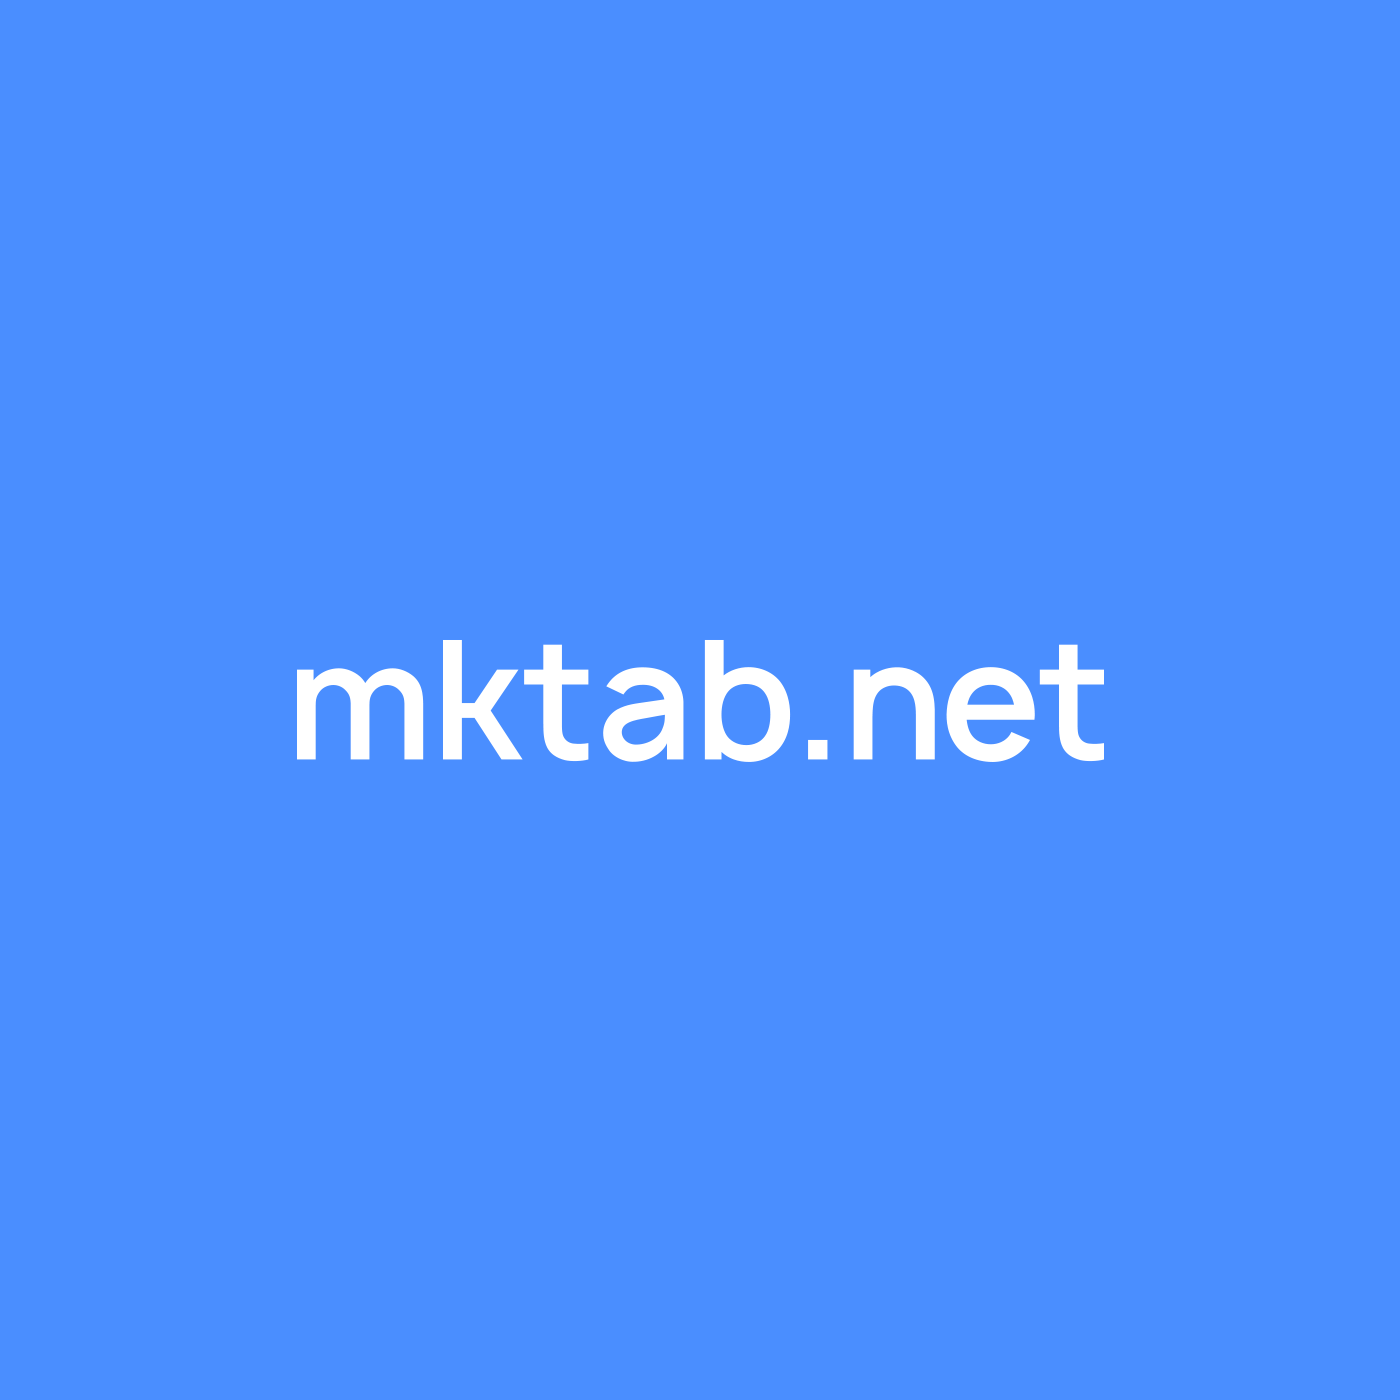 mktab.net logo